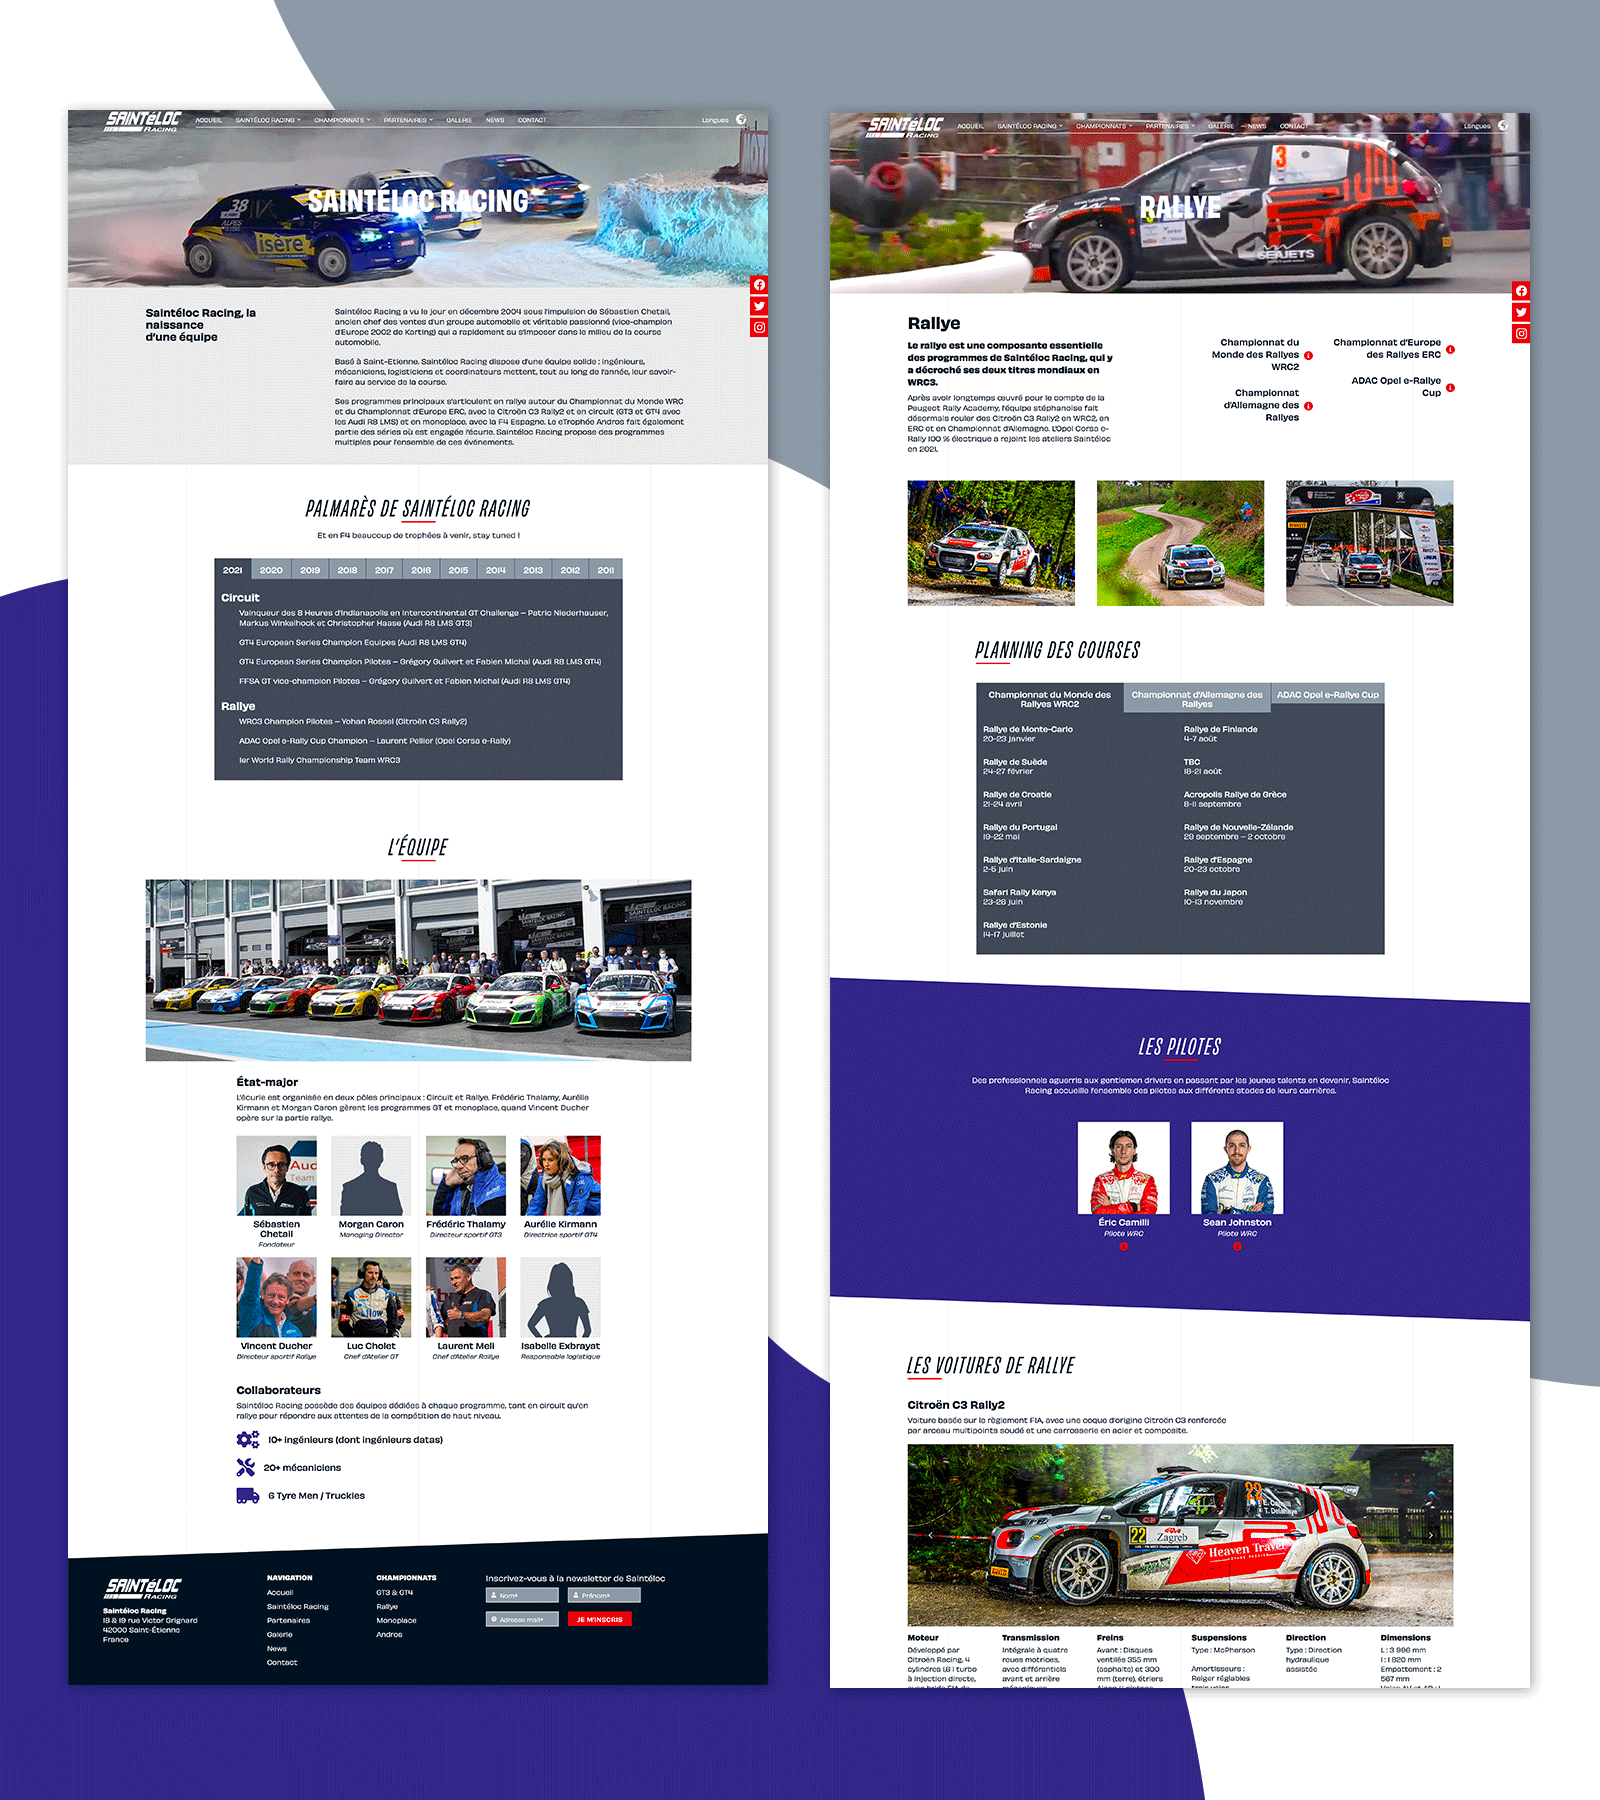 Présentation de la page "Saintéloc Racing" du site Saintéloc Racing